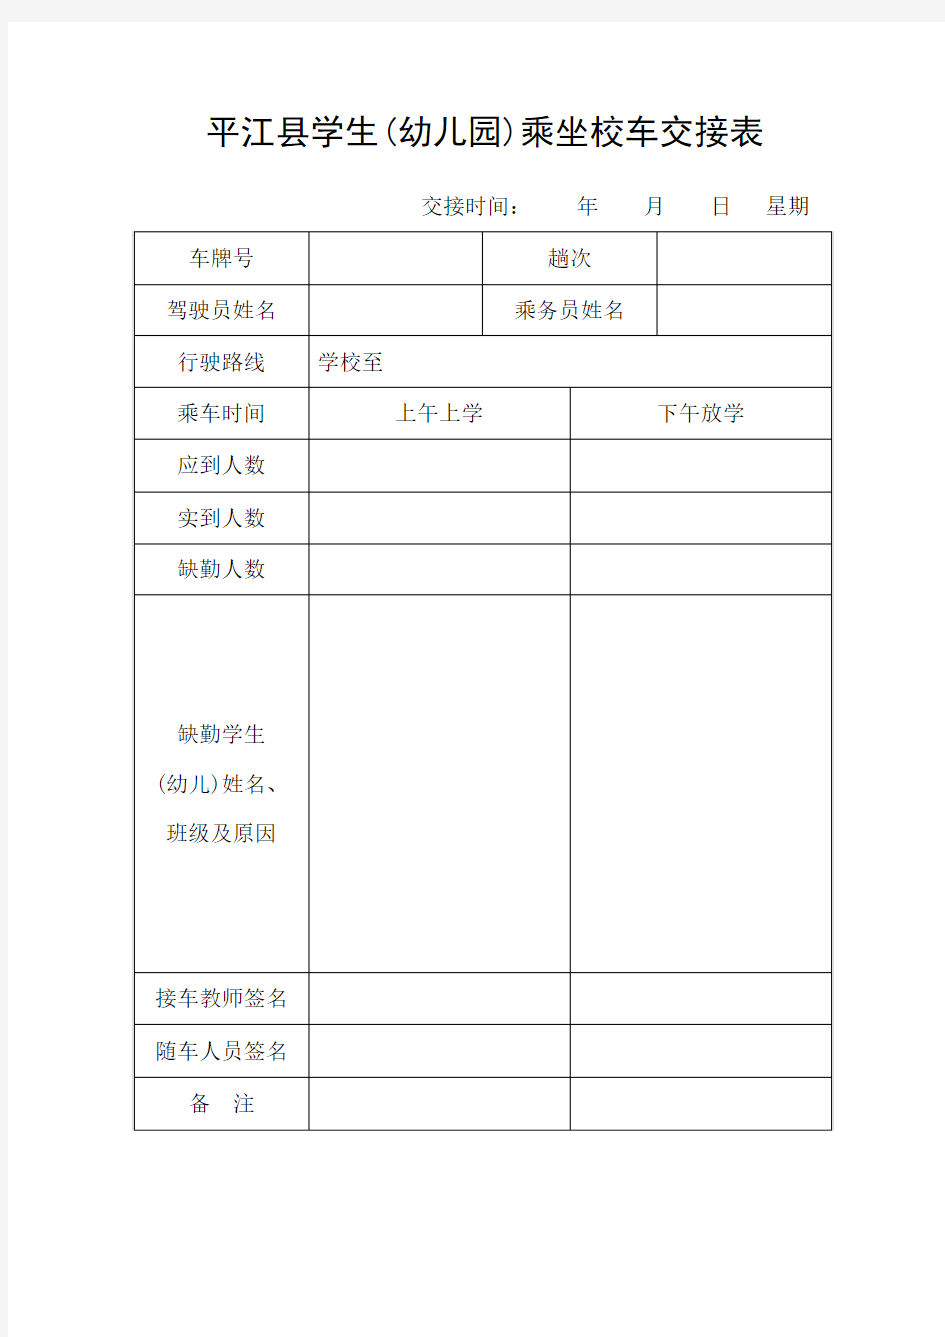 平江县学生(幼儿园)实名制乘车登记表